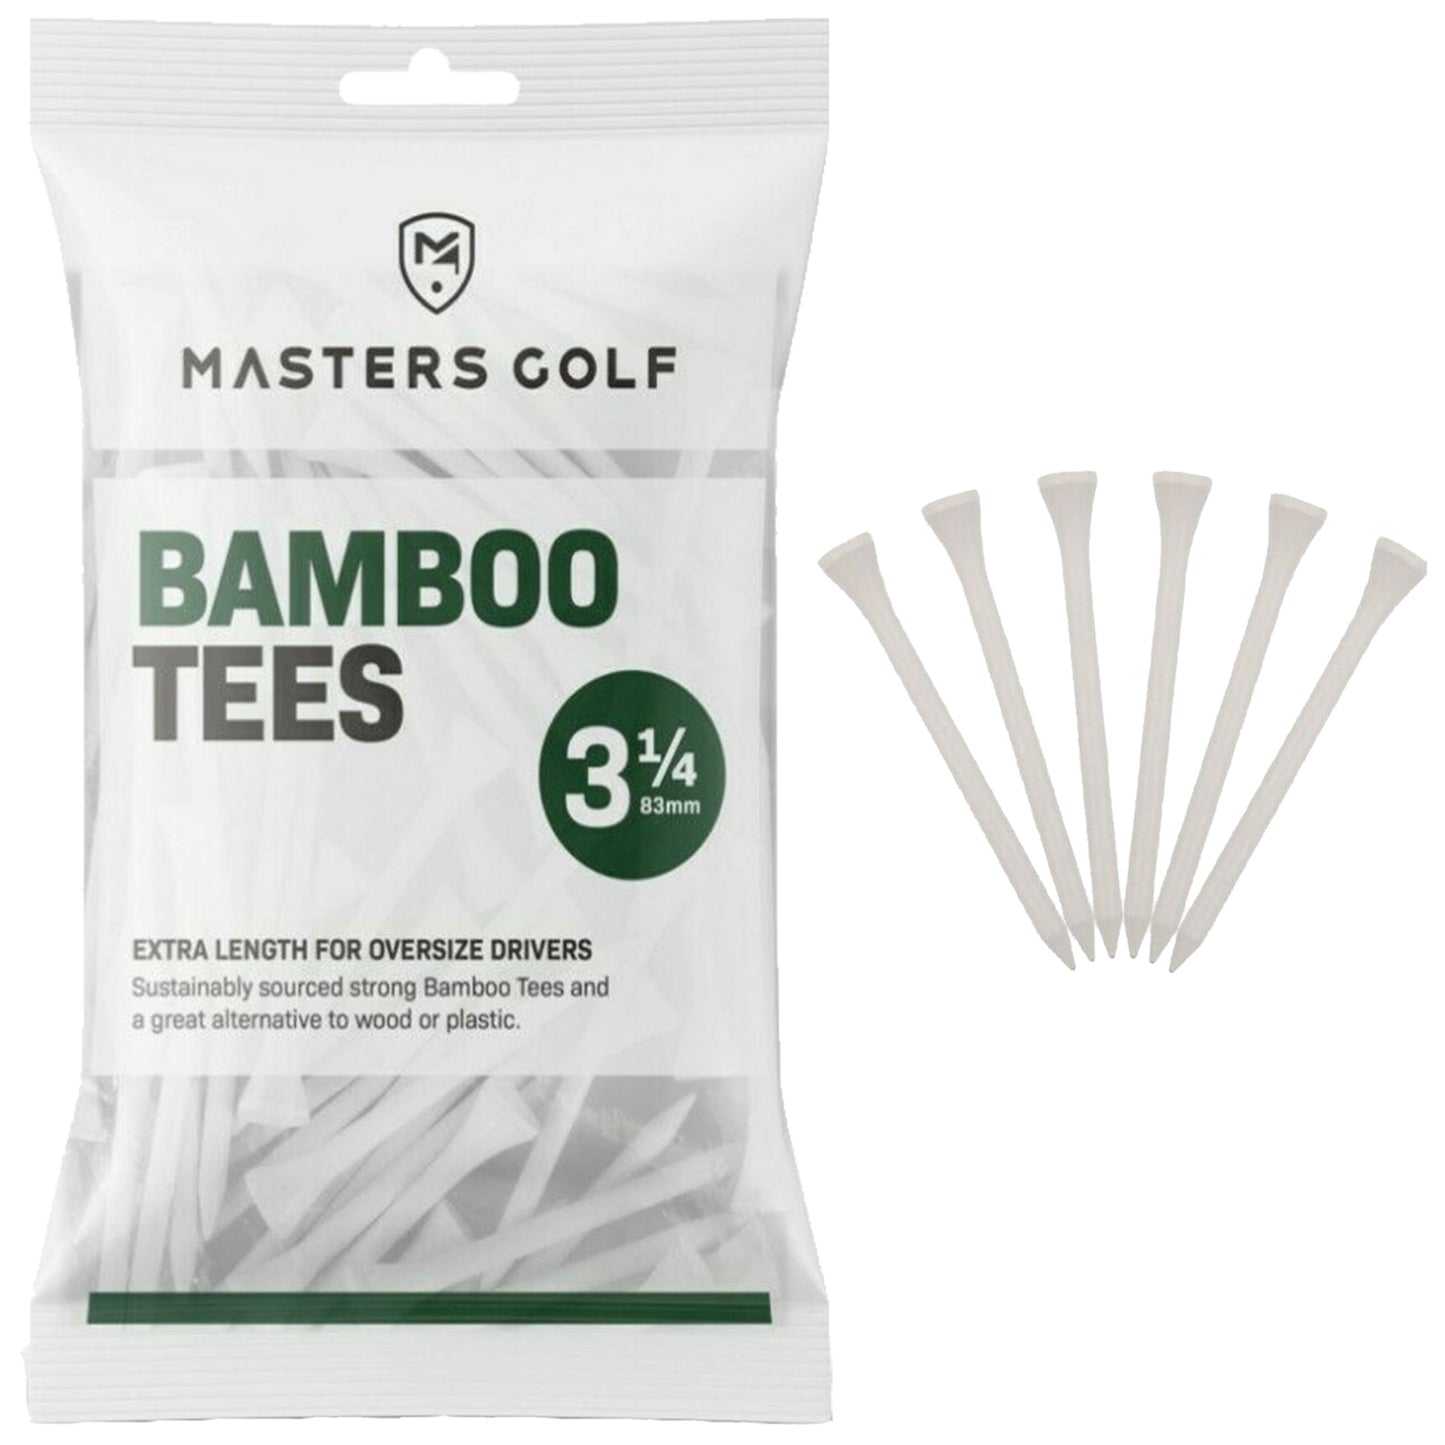 Masters Golf Bamboo Tees